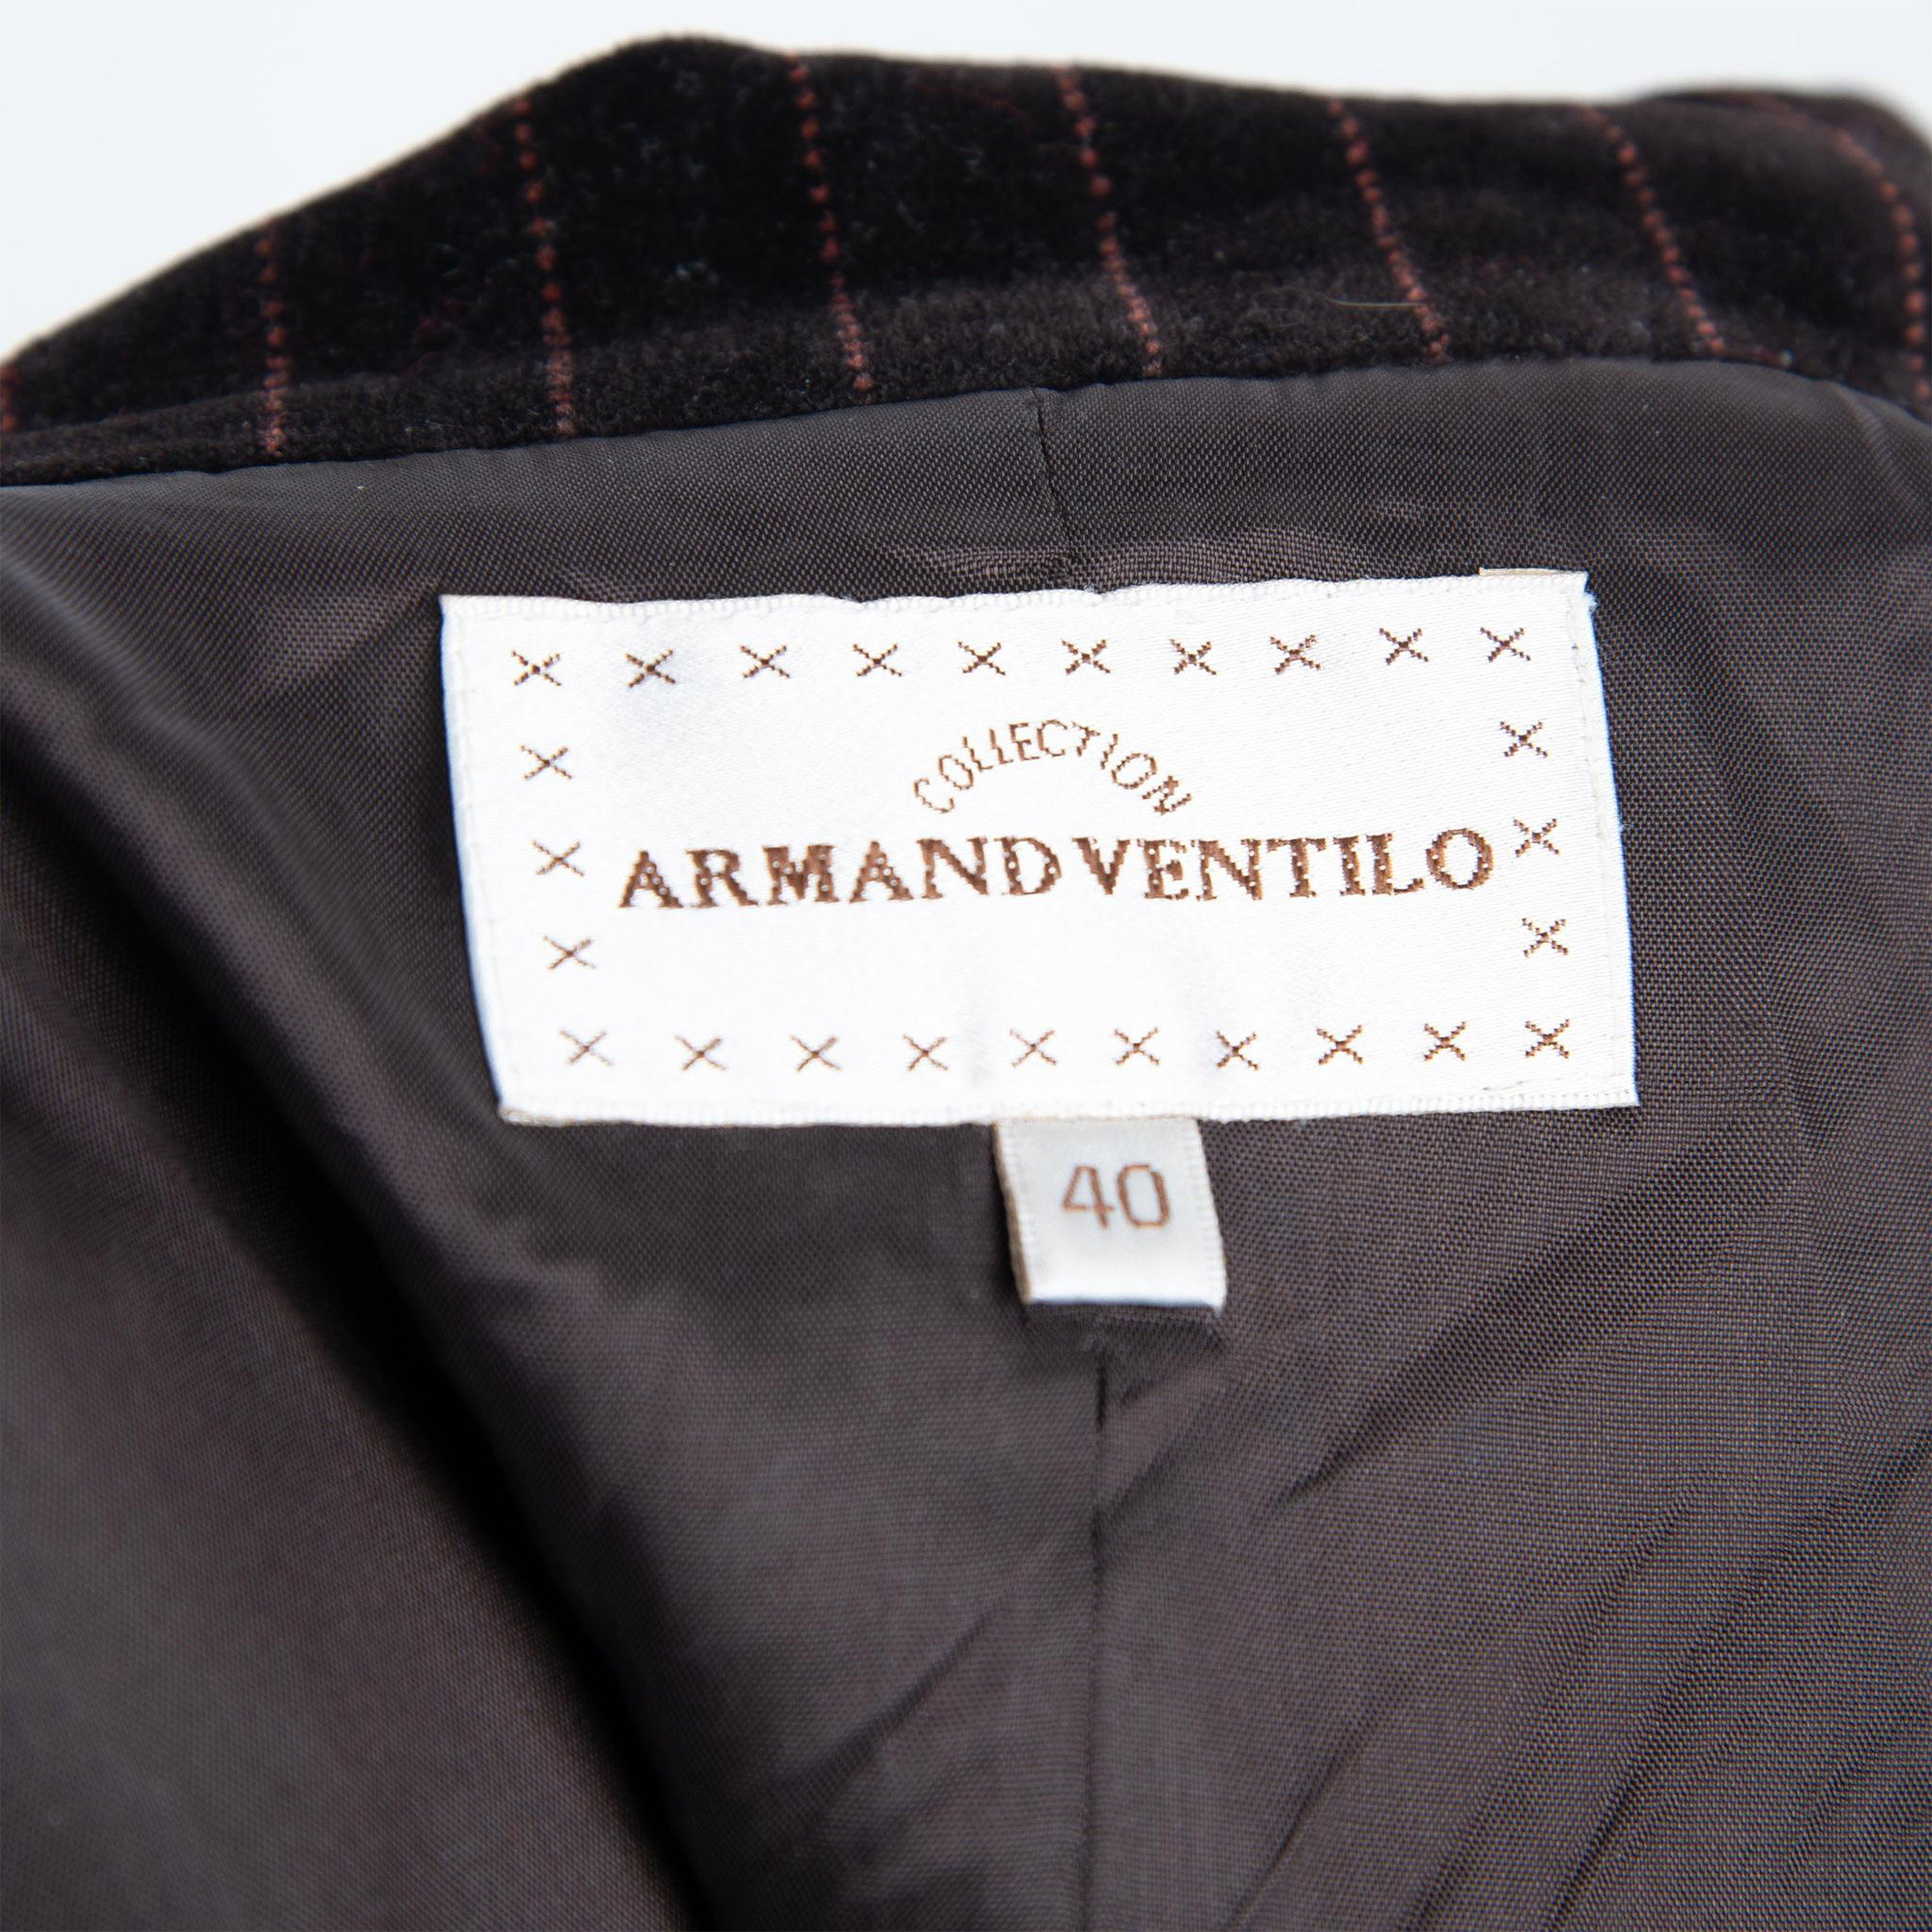 2pc Vintage Armand Ventilo Velvet Pant Suit, Size 40 - Image 12 of 12